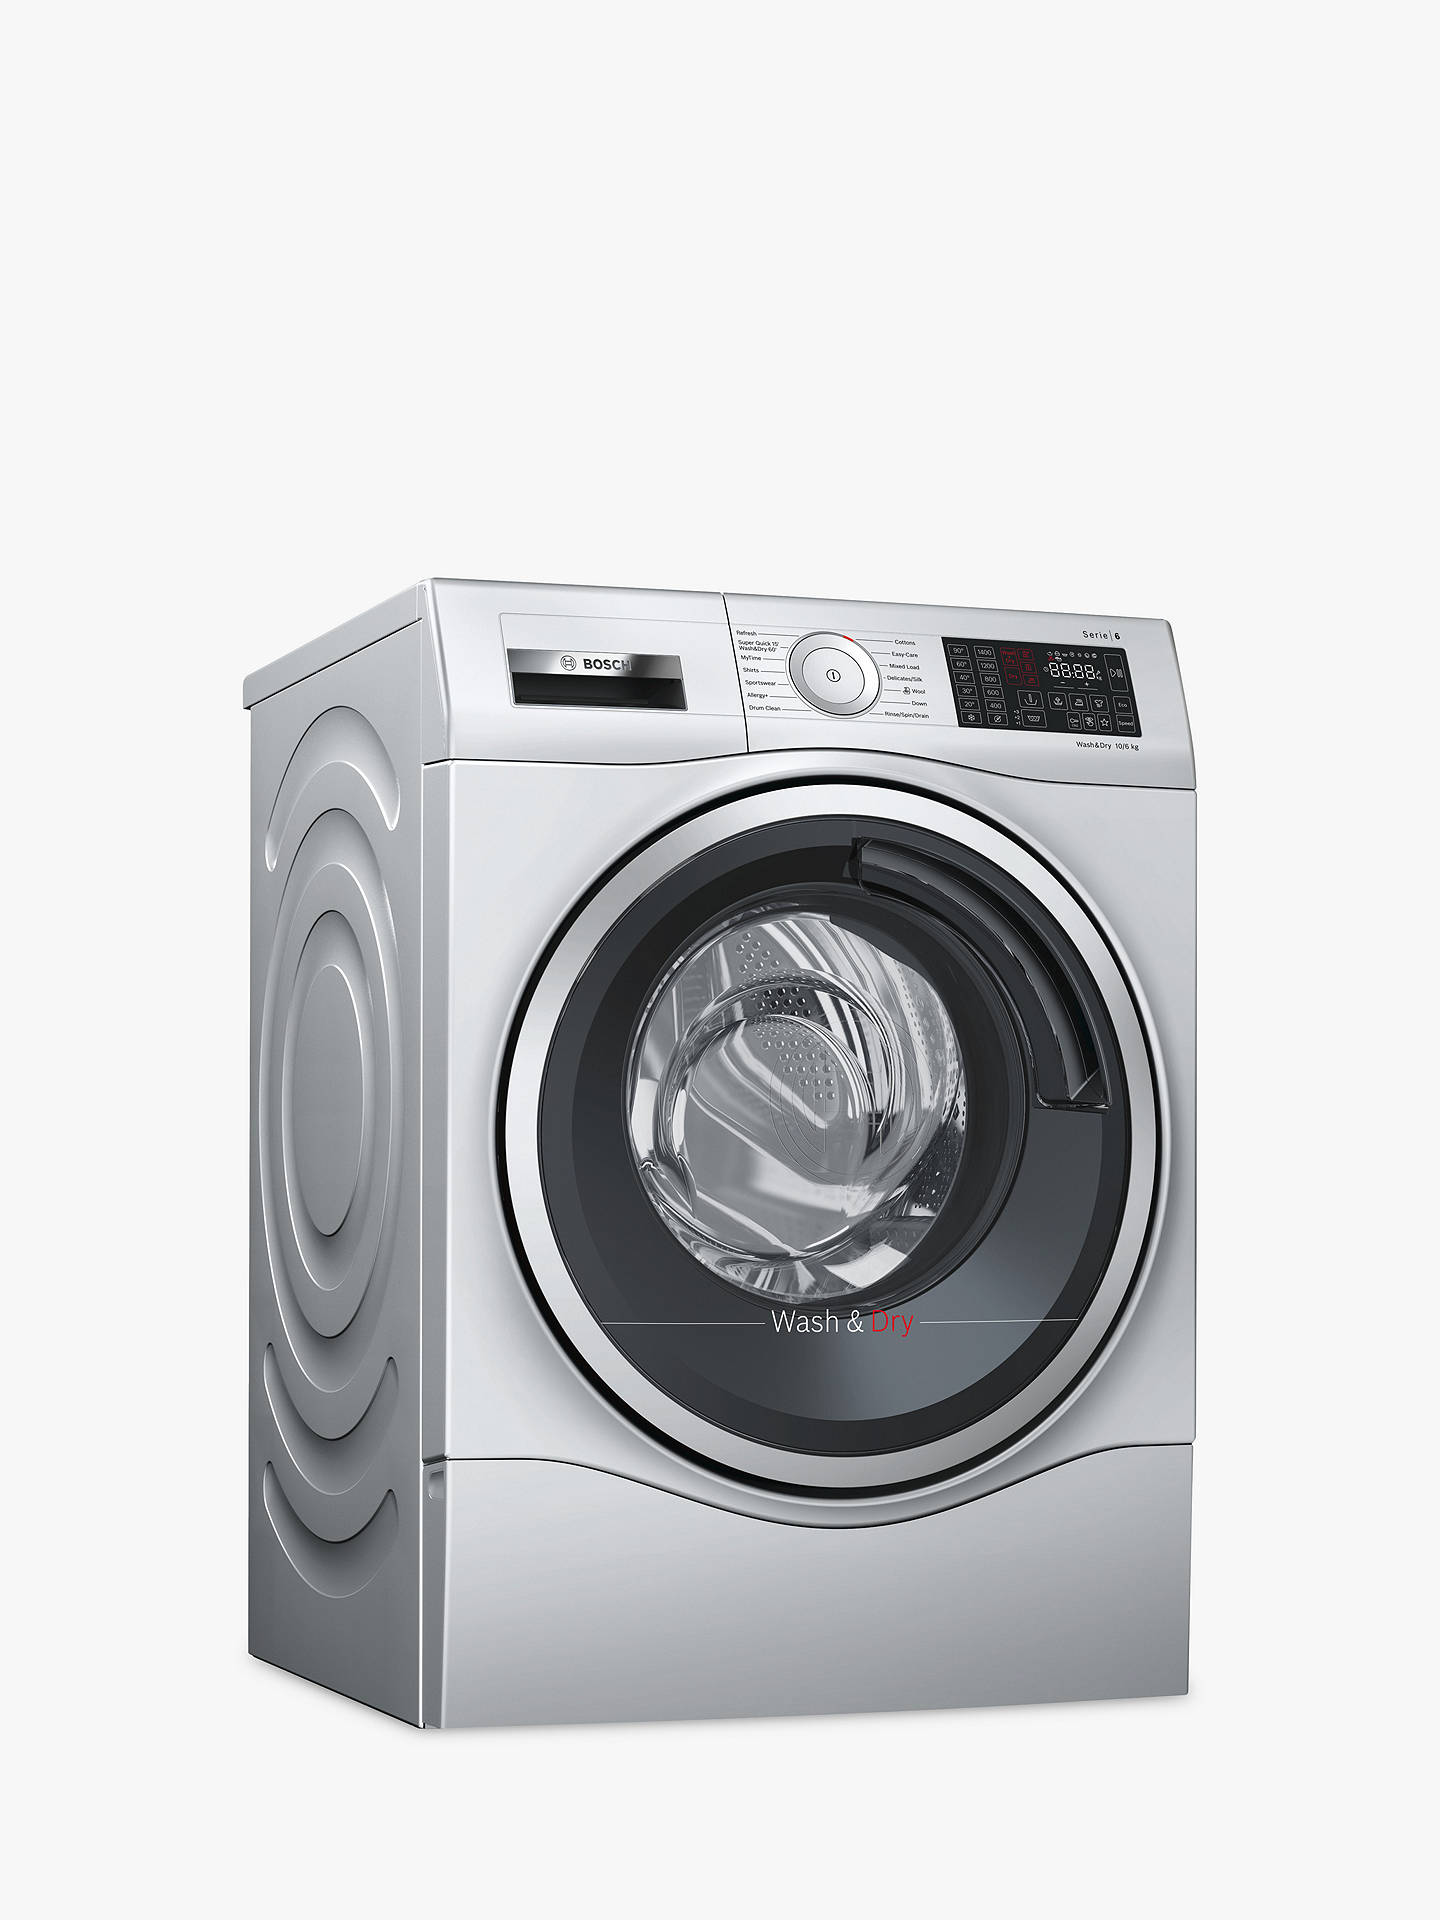 Bosch Stainless Steel Washer Dryer